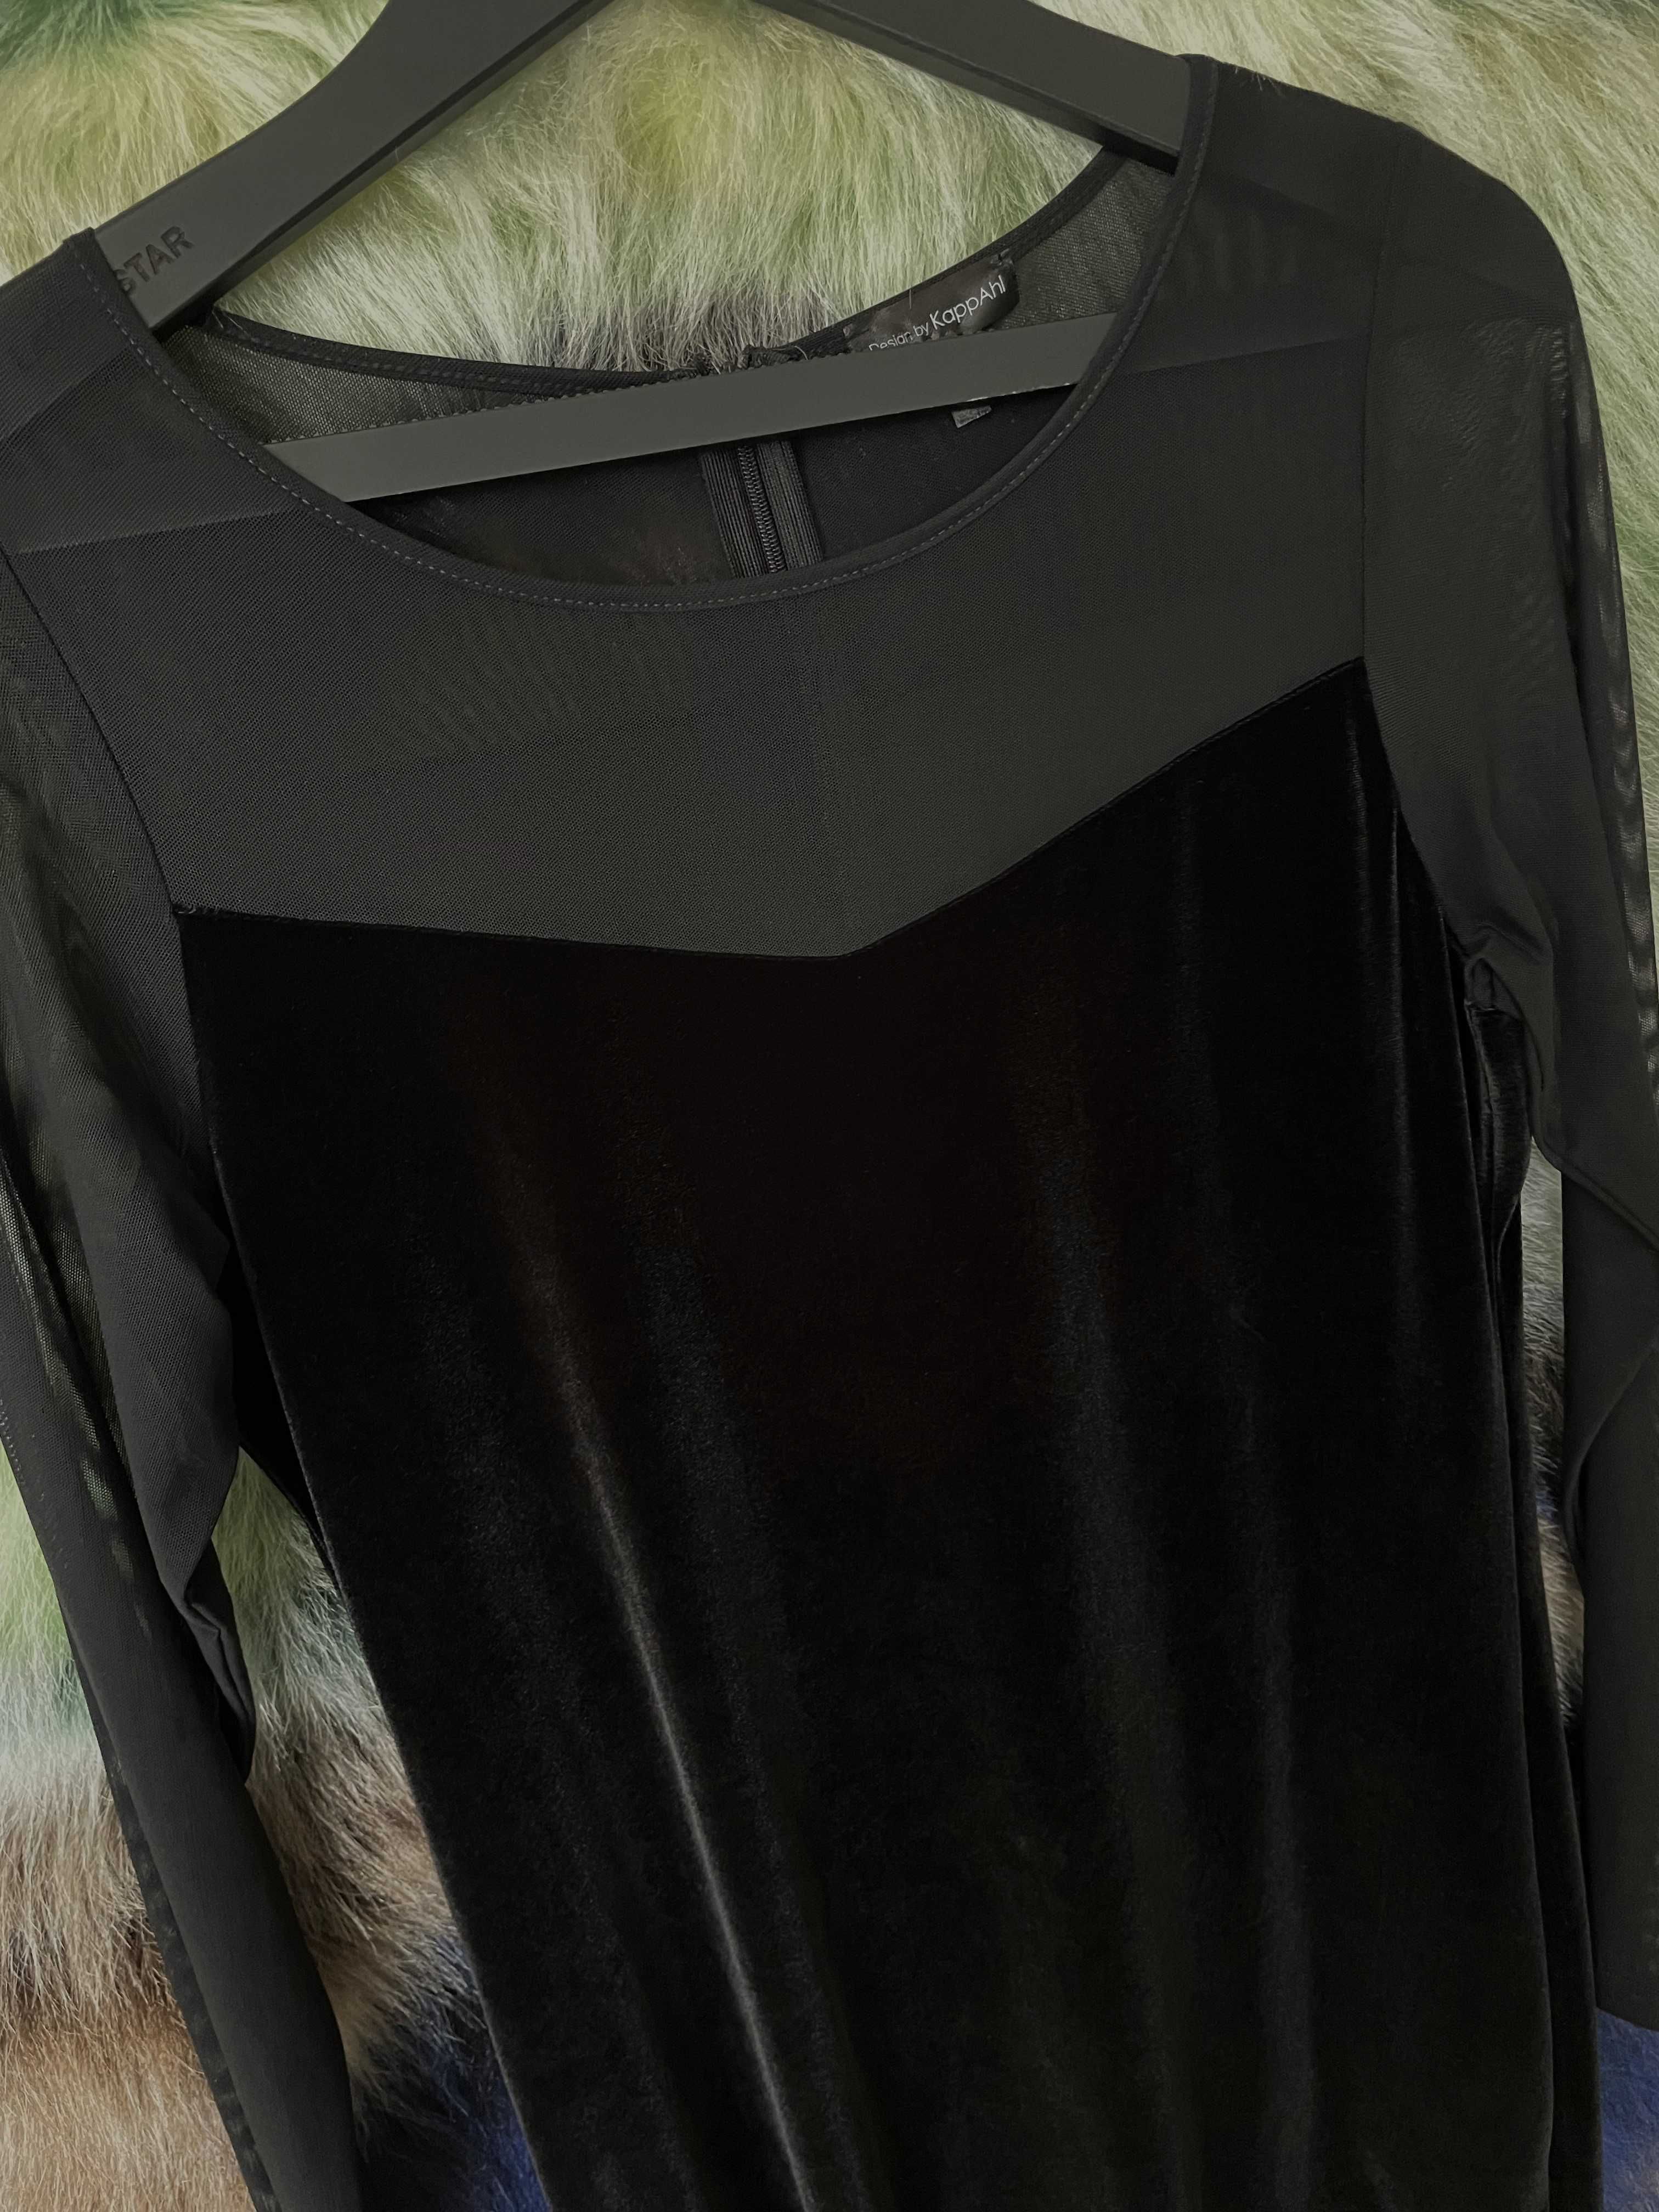 Czarna sukienka tunika KappAhl welurowa z tiulowym rękawem r. L/ XL